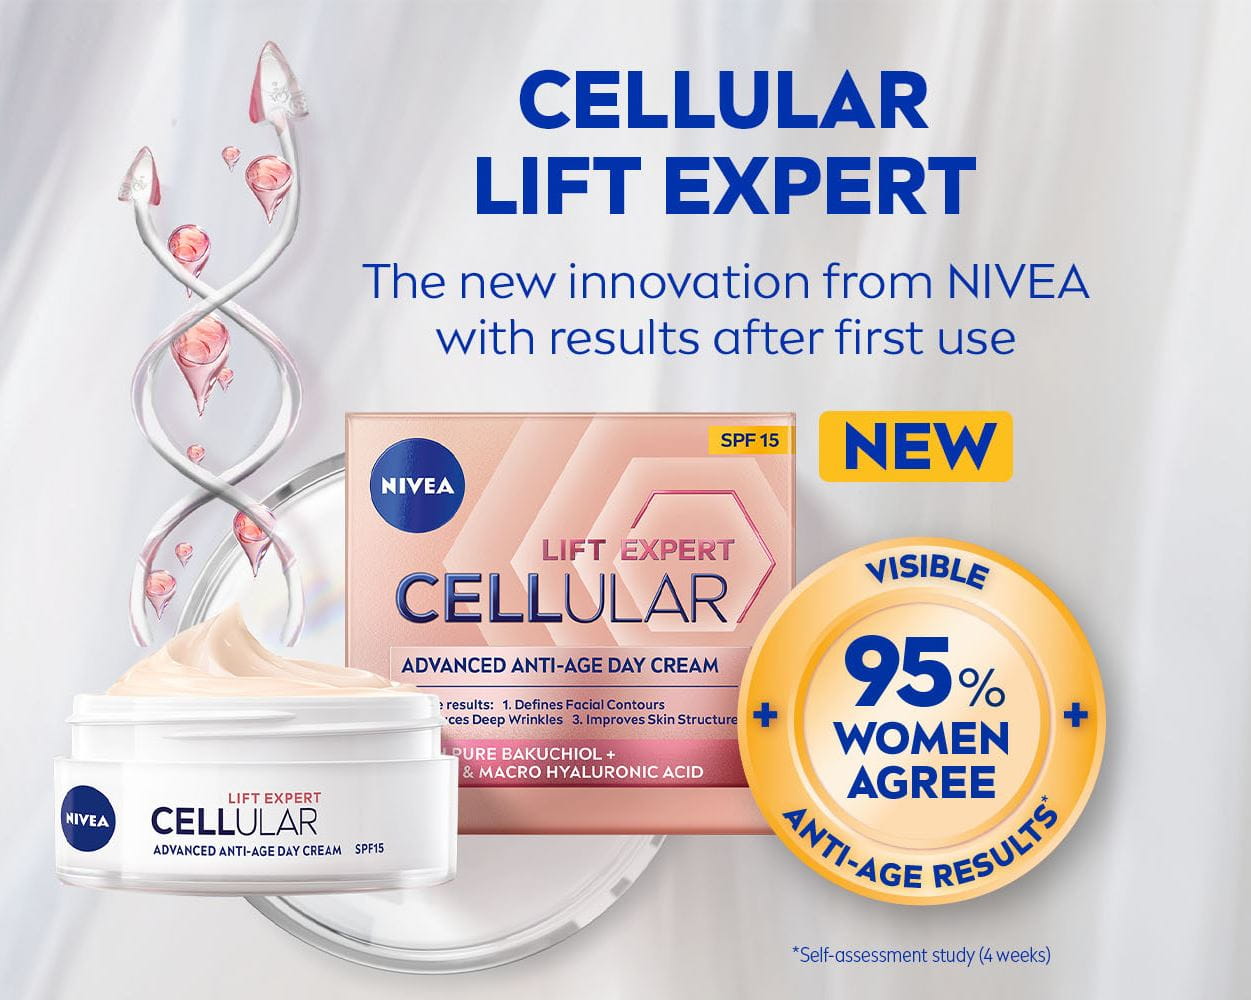 Cellular expert lift